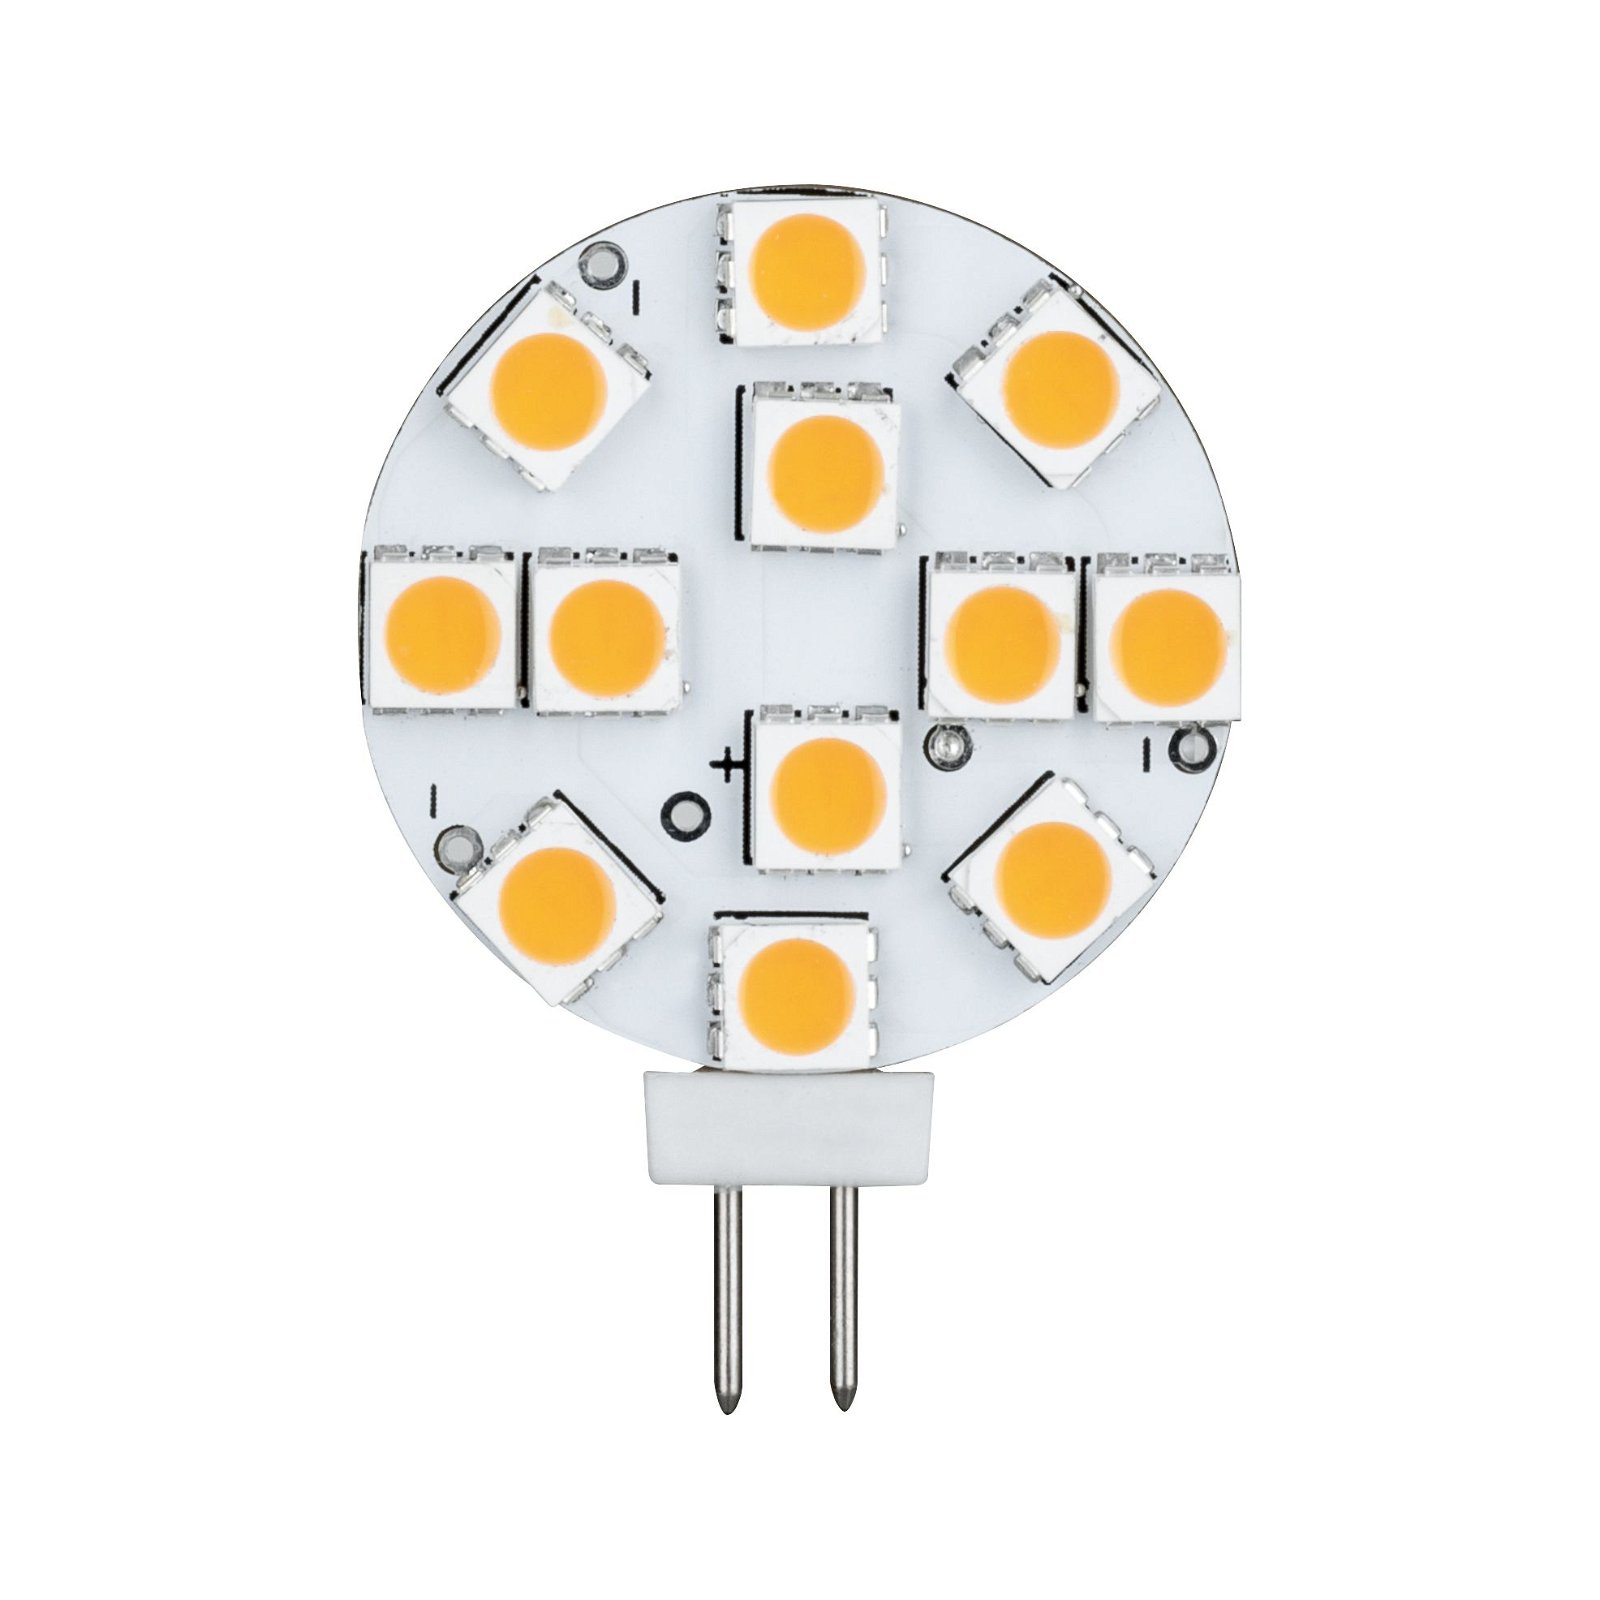 12 V Standard LED Pin base G4 270lm 3,2W 2700K White